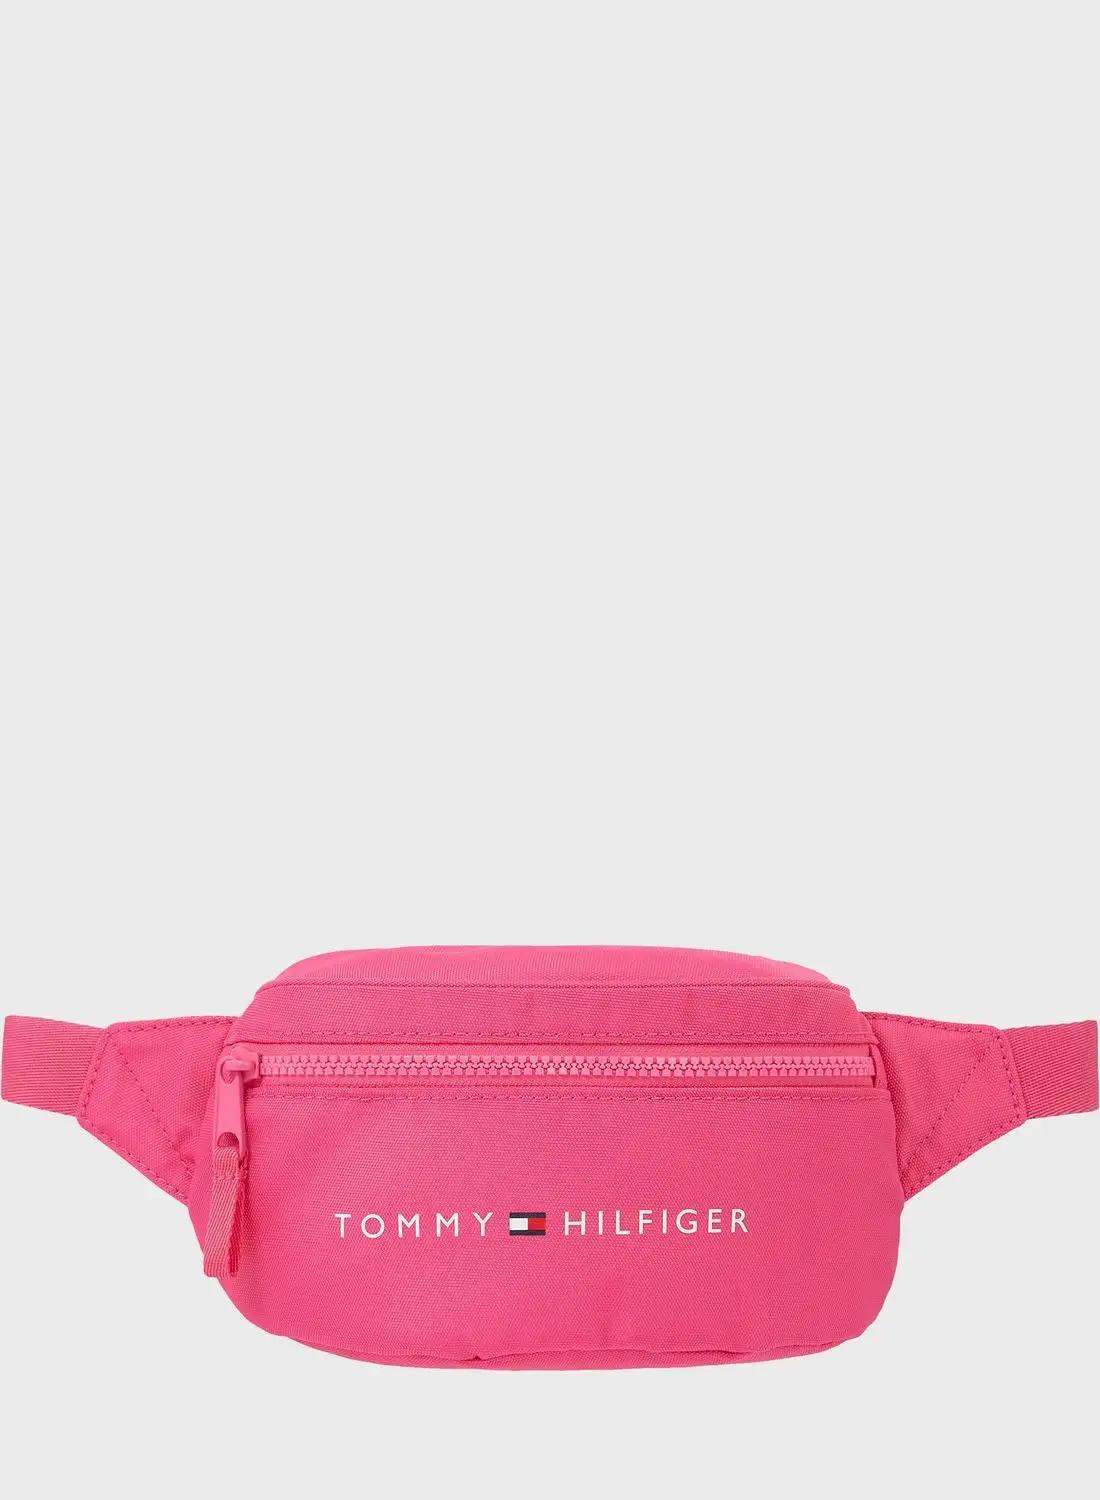 TOMMY HILFIGER Kids Essential Bumbag